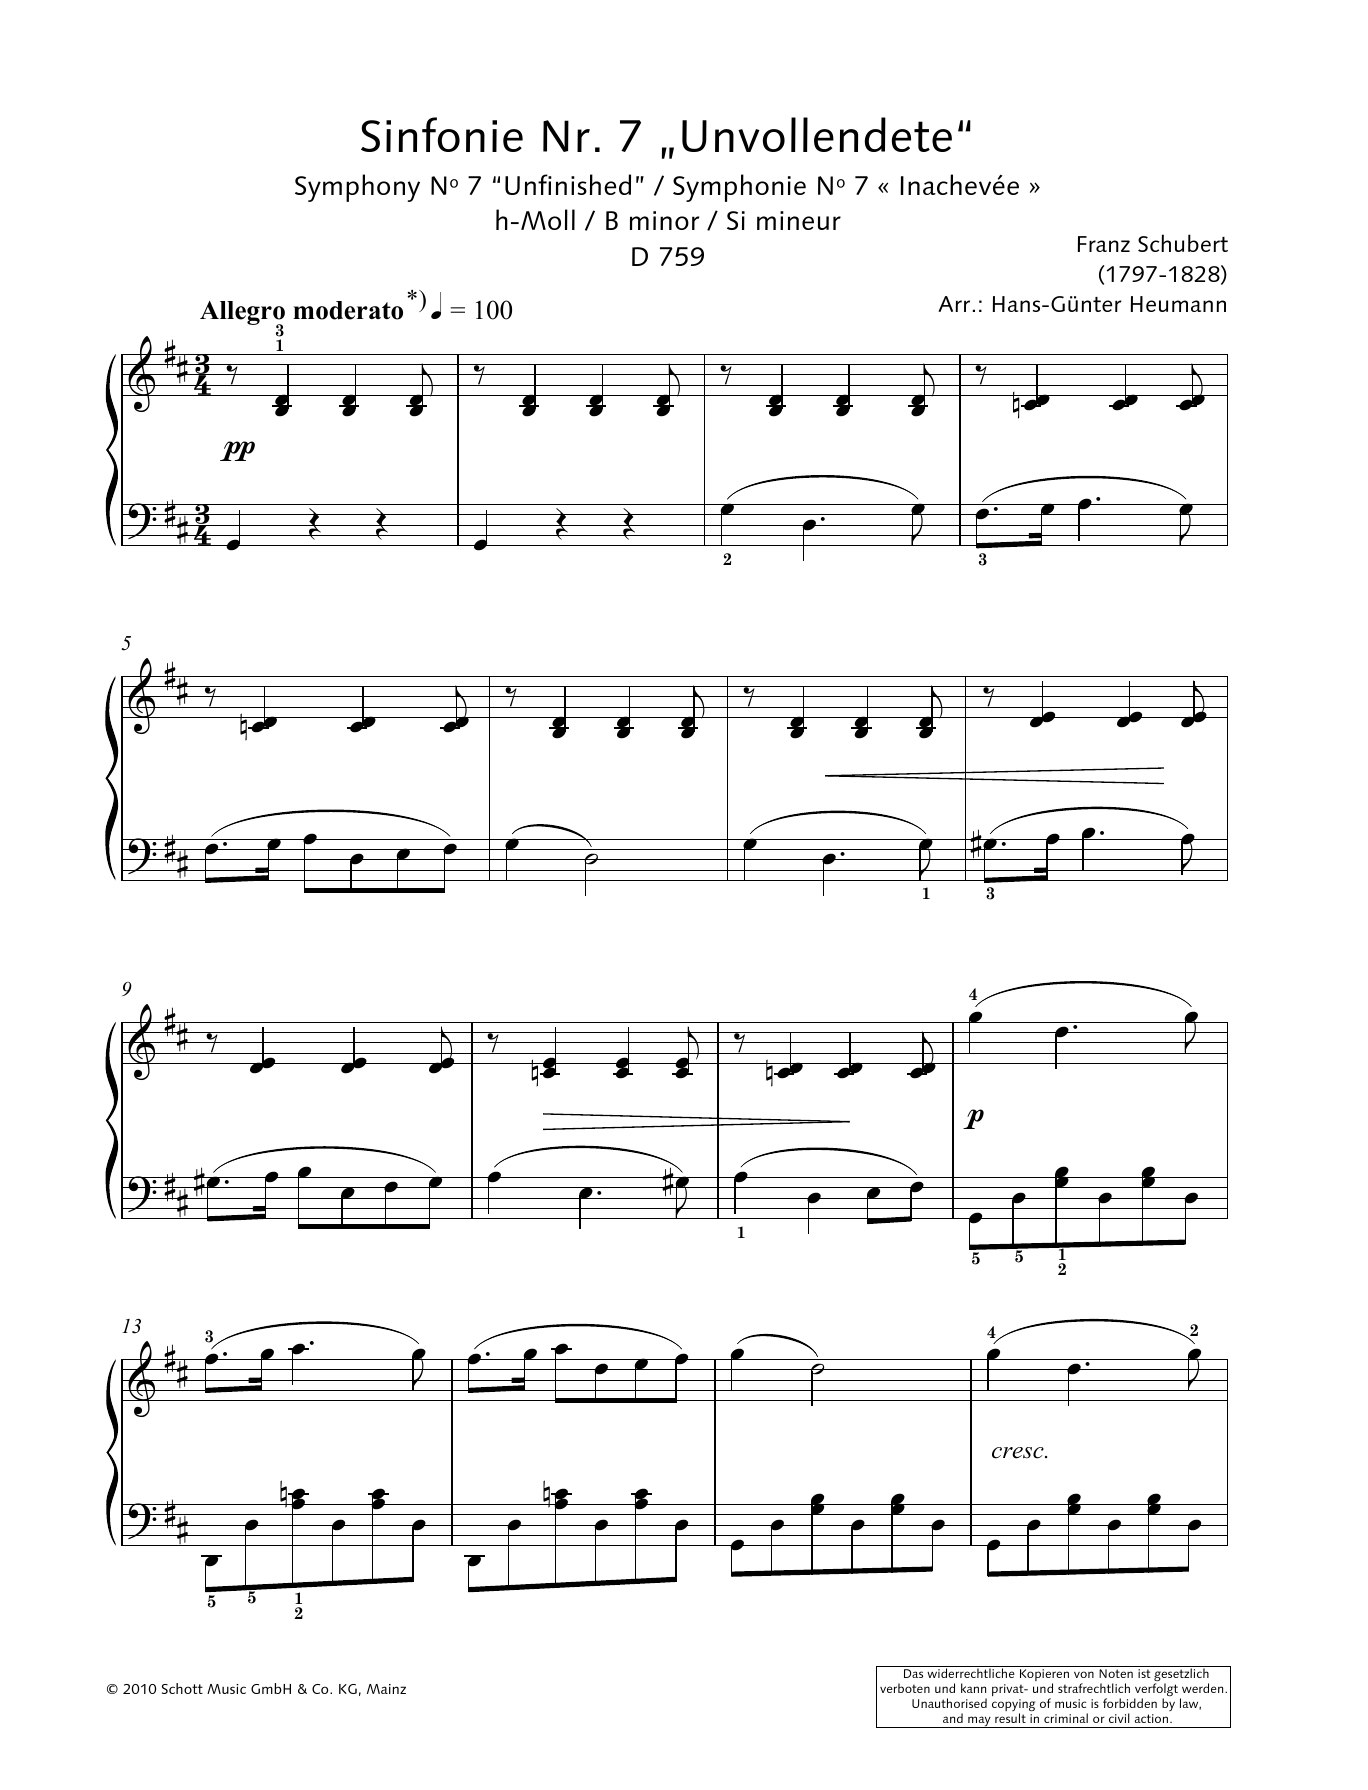 Download Hans-Gunter Heumann Symphony No. 7 